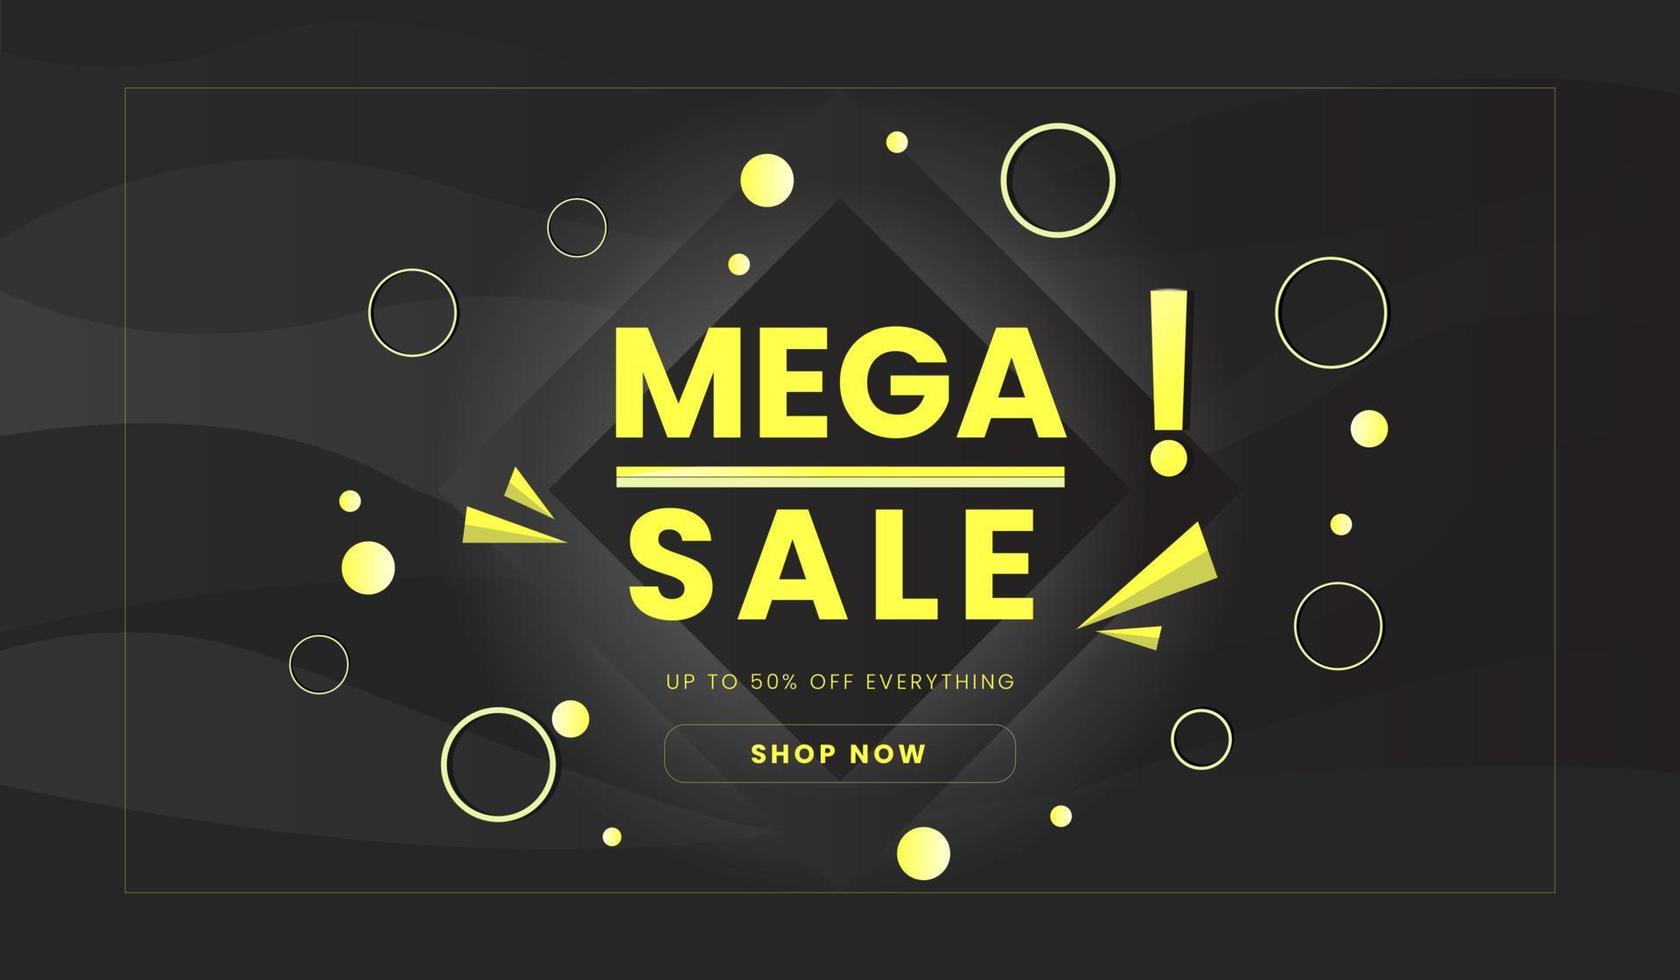 Mega sale promotion background vector design